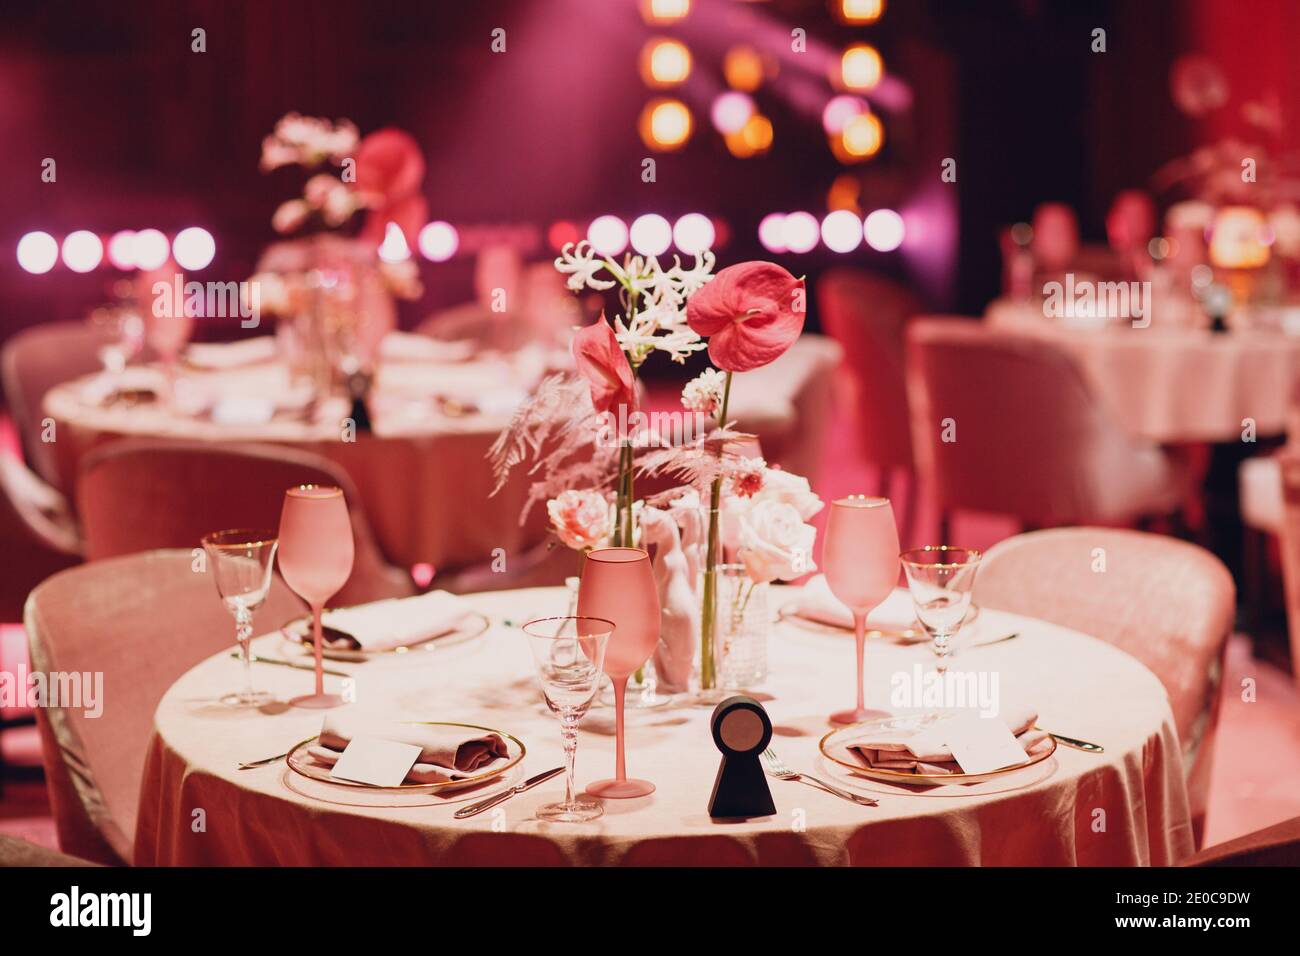 Dîner romantique table au décor rose au restaurant. Banque D'Images